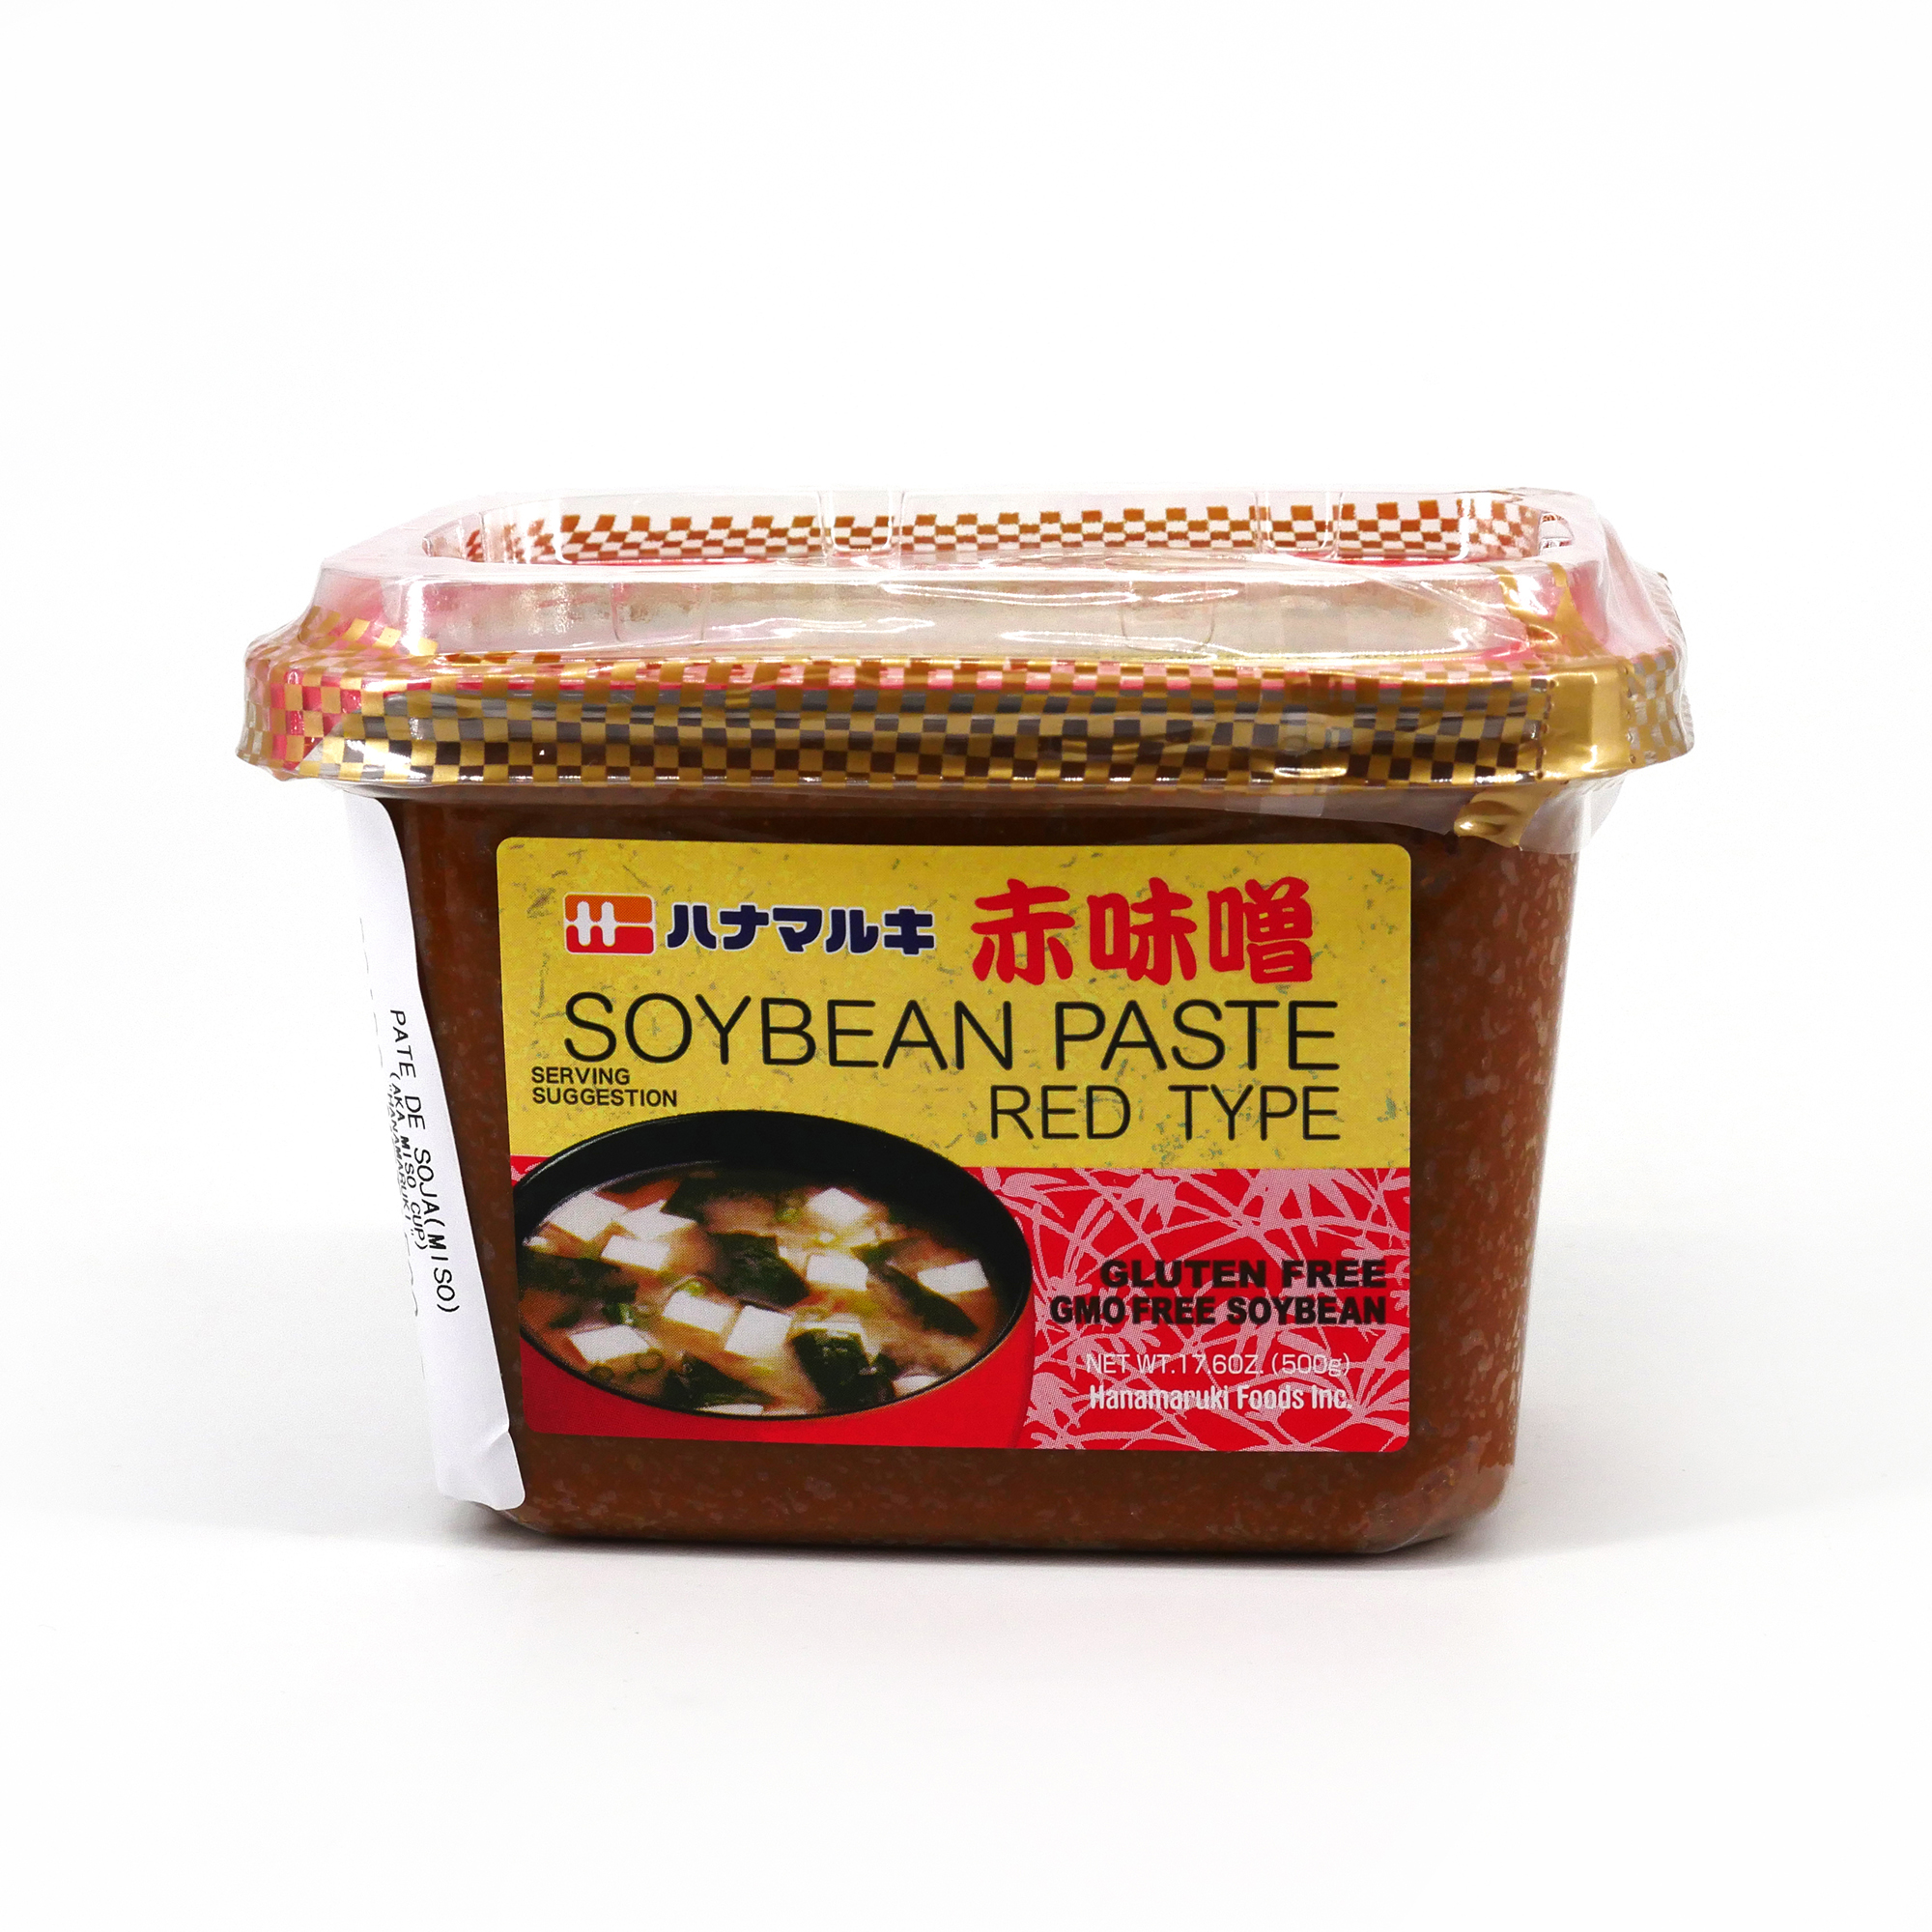 Pasta genérica de Miso Aka Roja de 6 meses Namikura Miso Co. 2.2 lbs, 2.2  libras (paquete de 1)